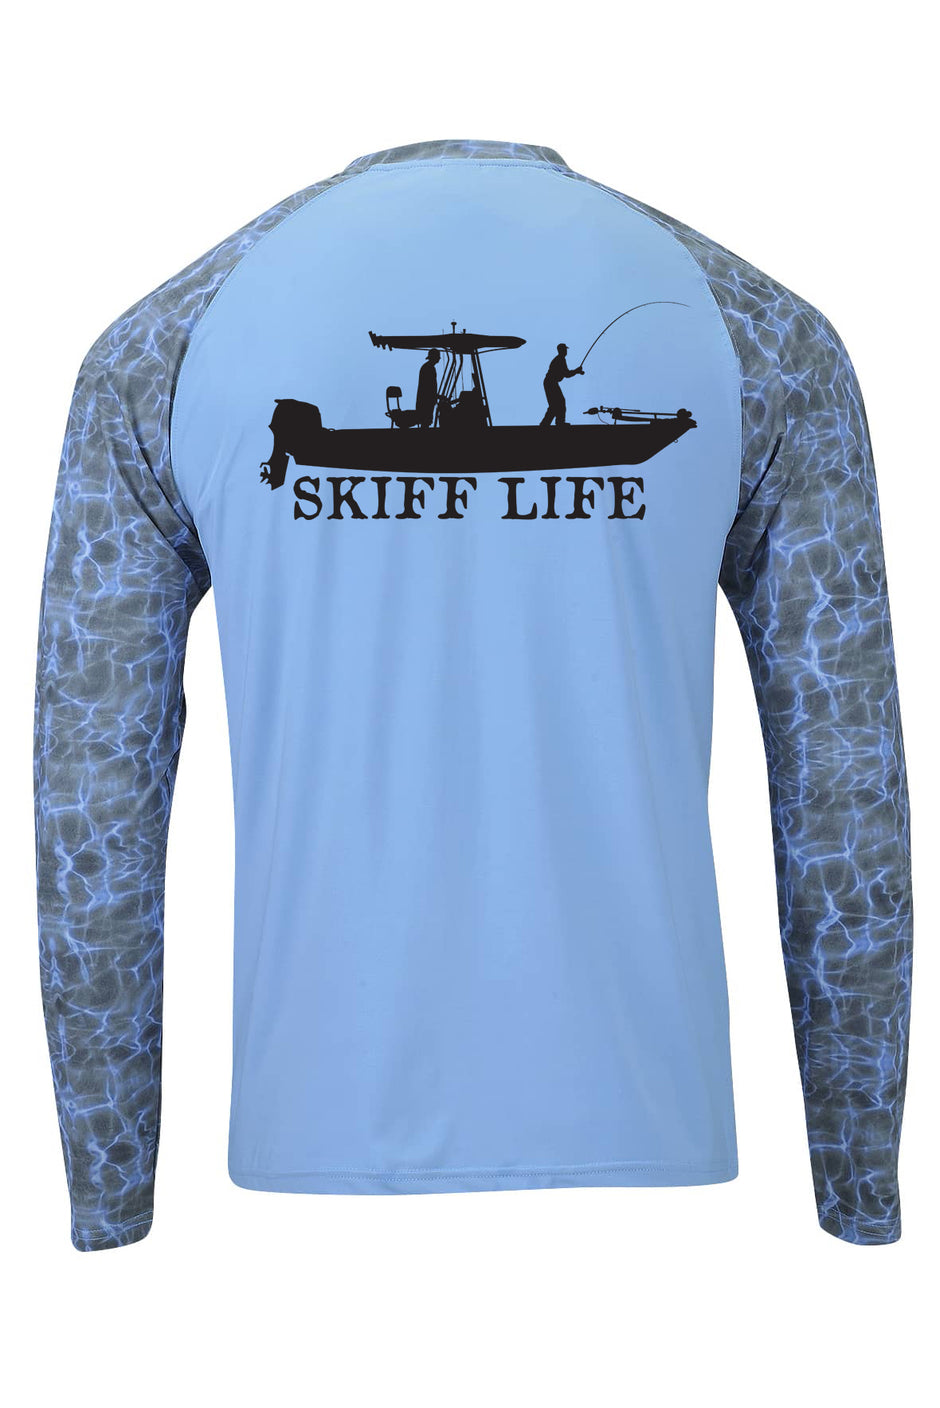 Skiff Life - Fishing Decals, Fishing Hats & Fishing Shirts